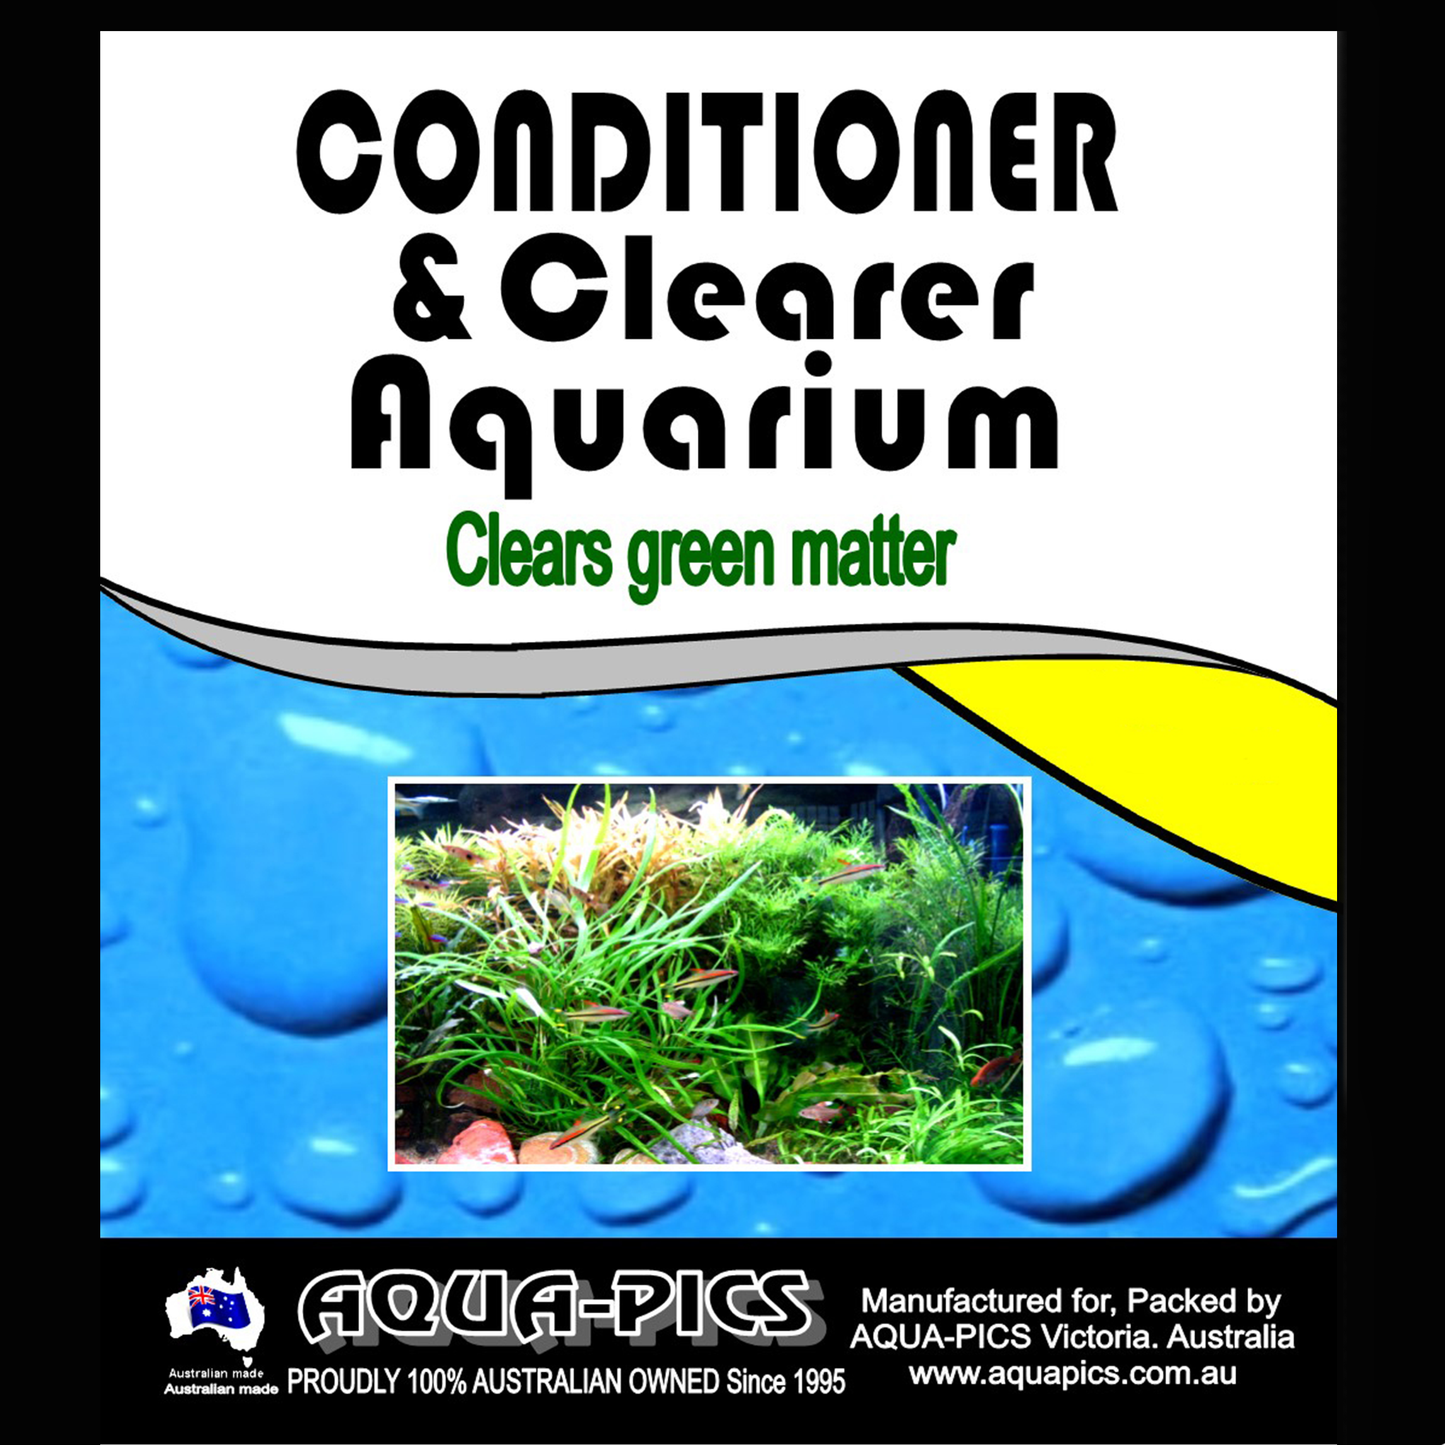 Conditioner & Clearer Aquarium 5 litre